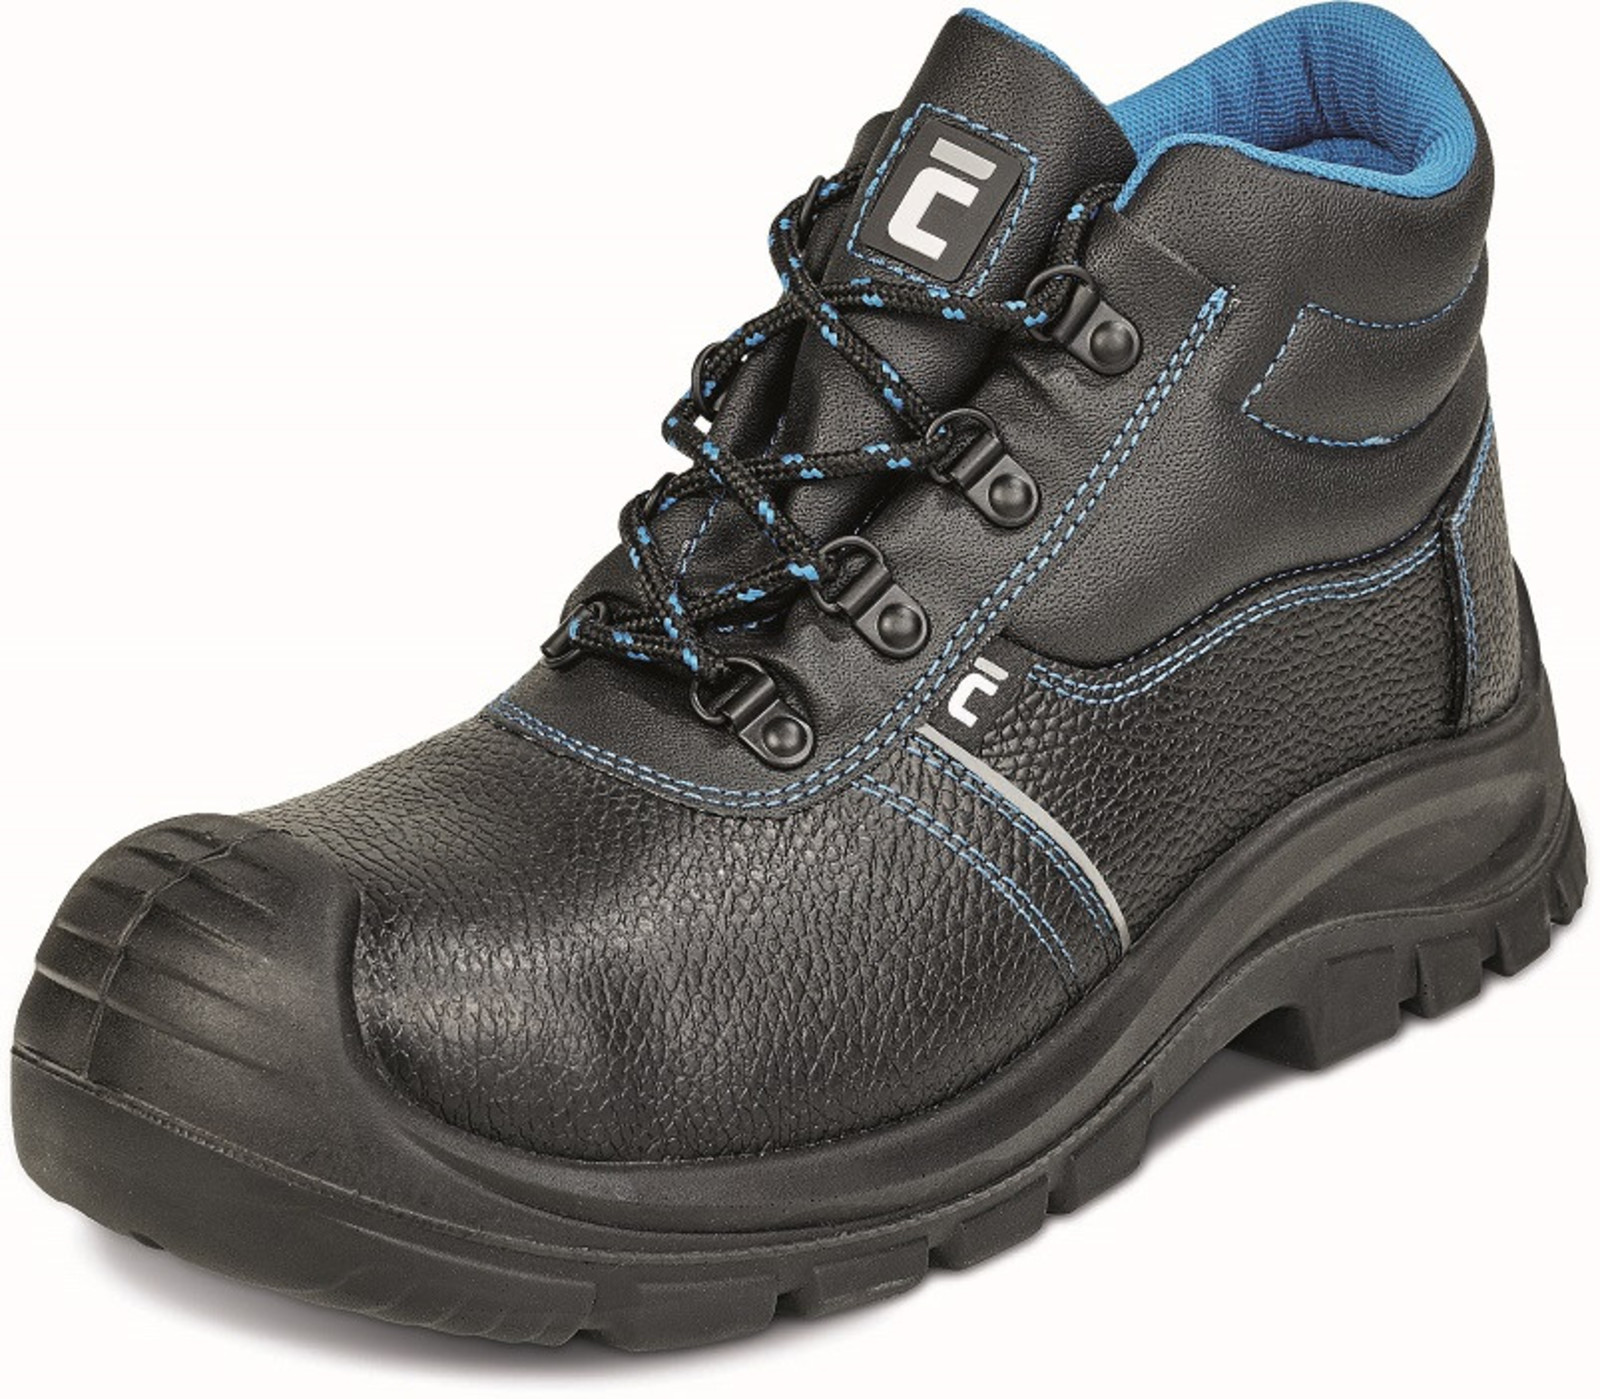 Bezpečnostná obuv Raven XT S1 - veľkosť: 48, farba: čierna